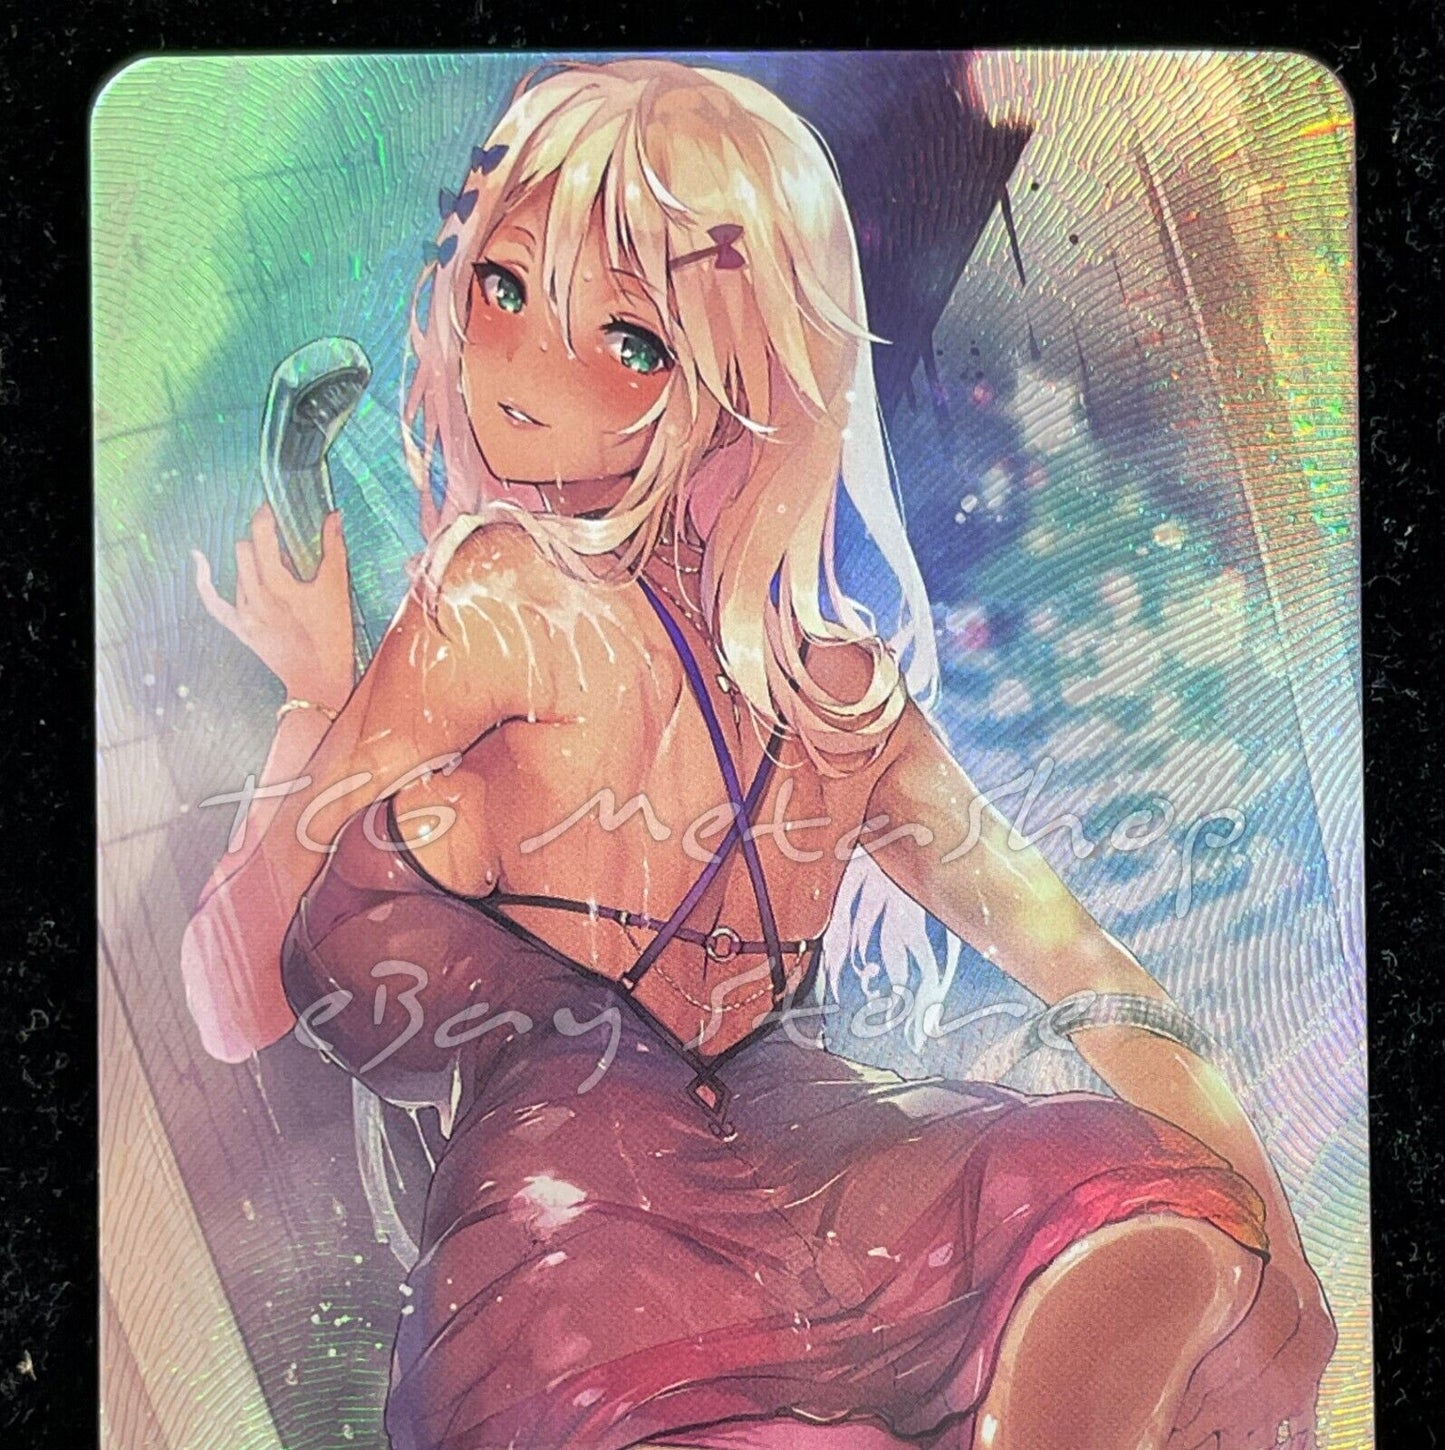 🔥 Swimsuit Girl Goddess Story Anime Card ACG # 576 🔥